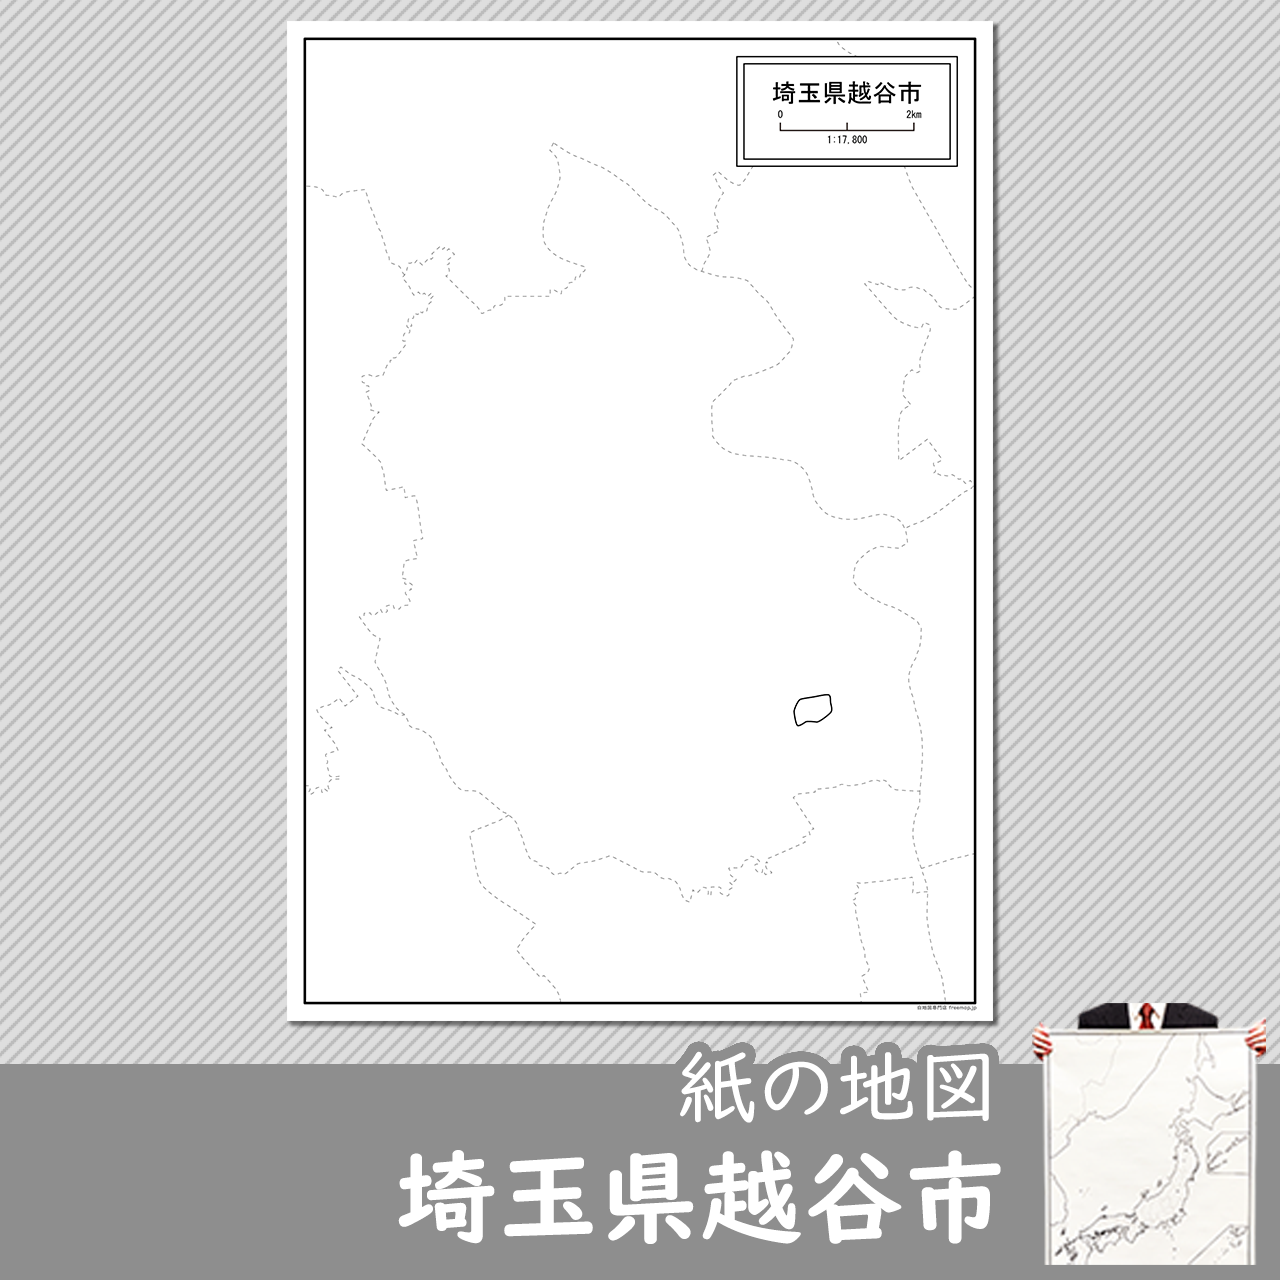 越谷市の紙の白地図のサムネイル